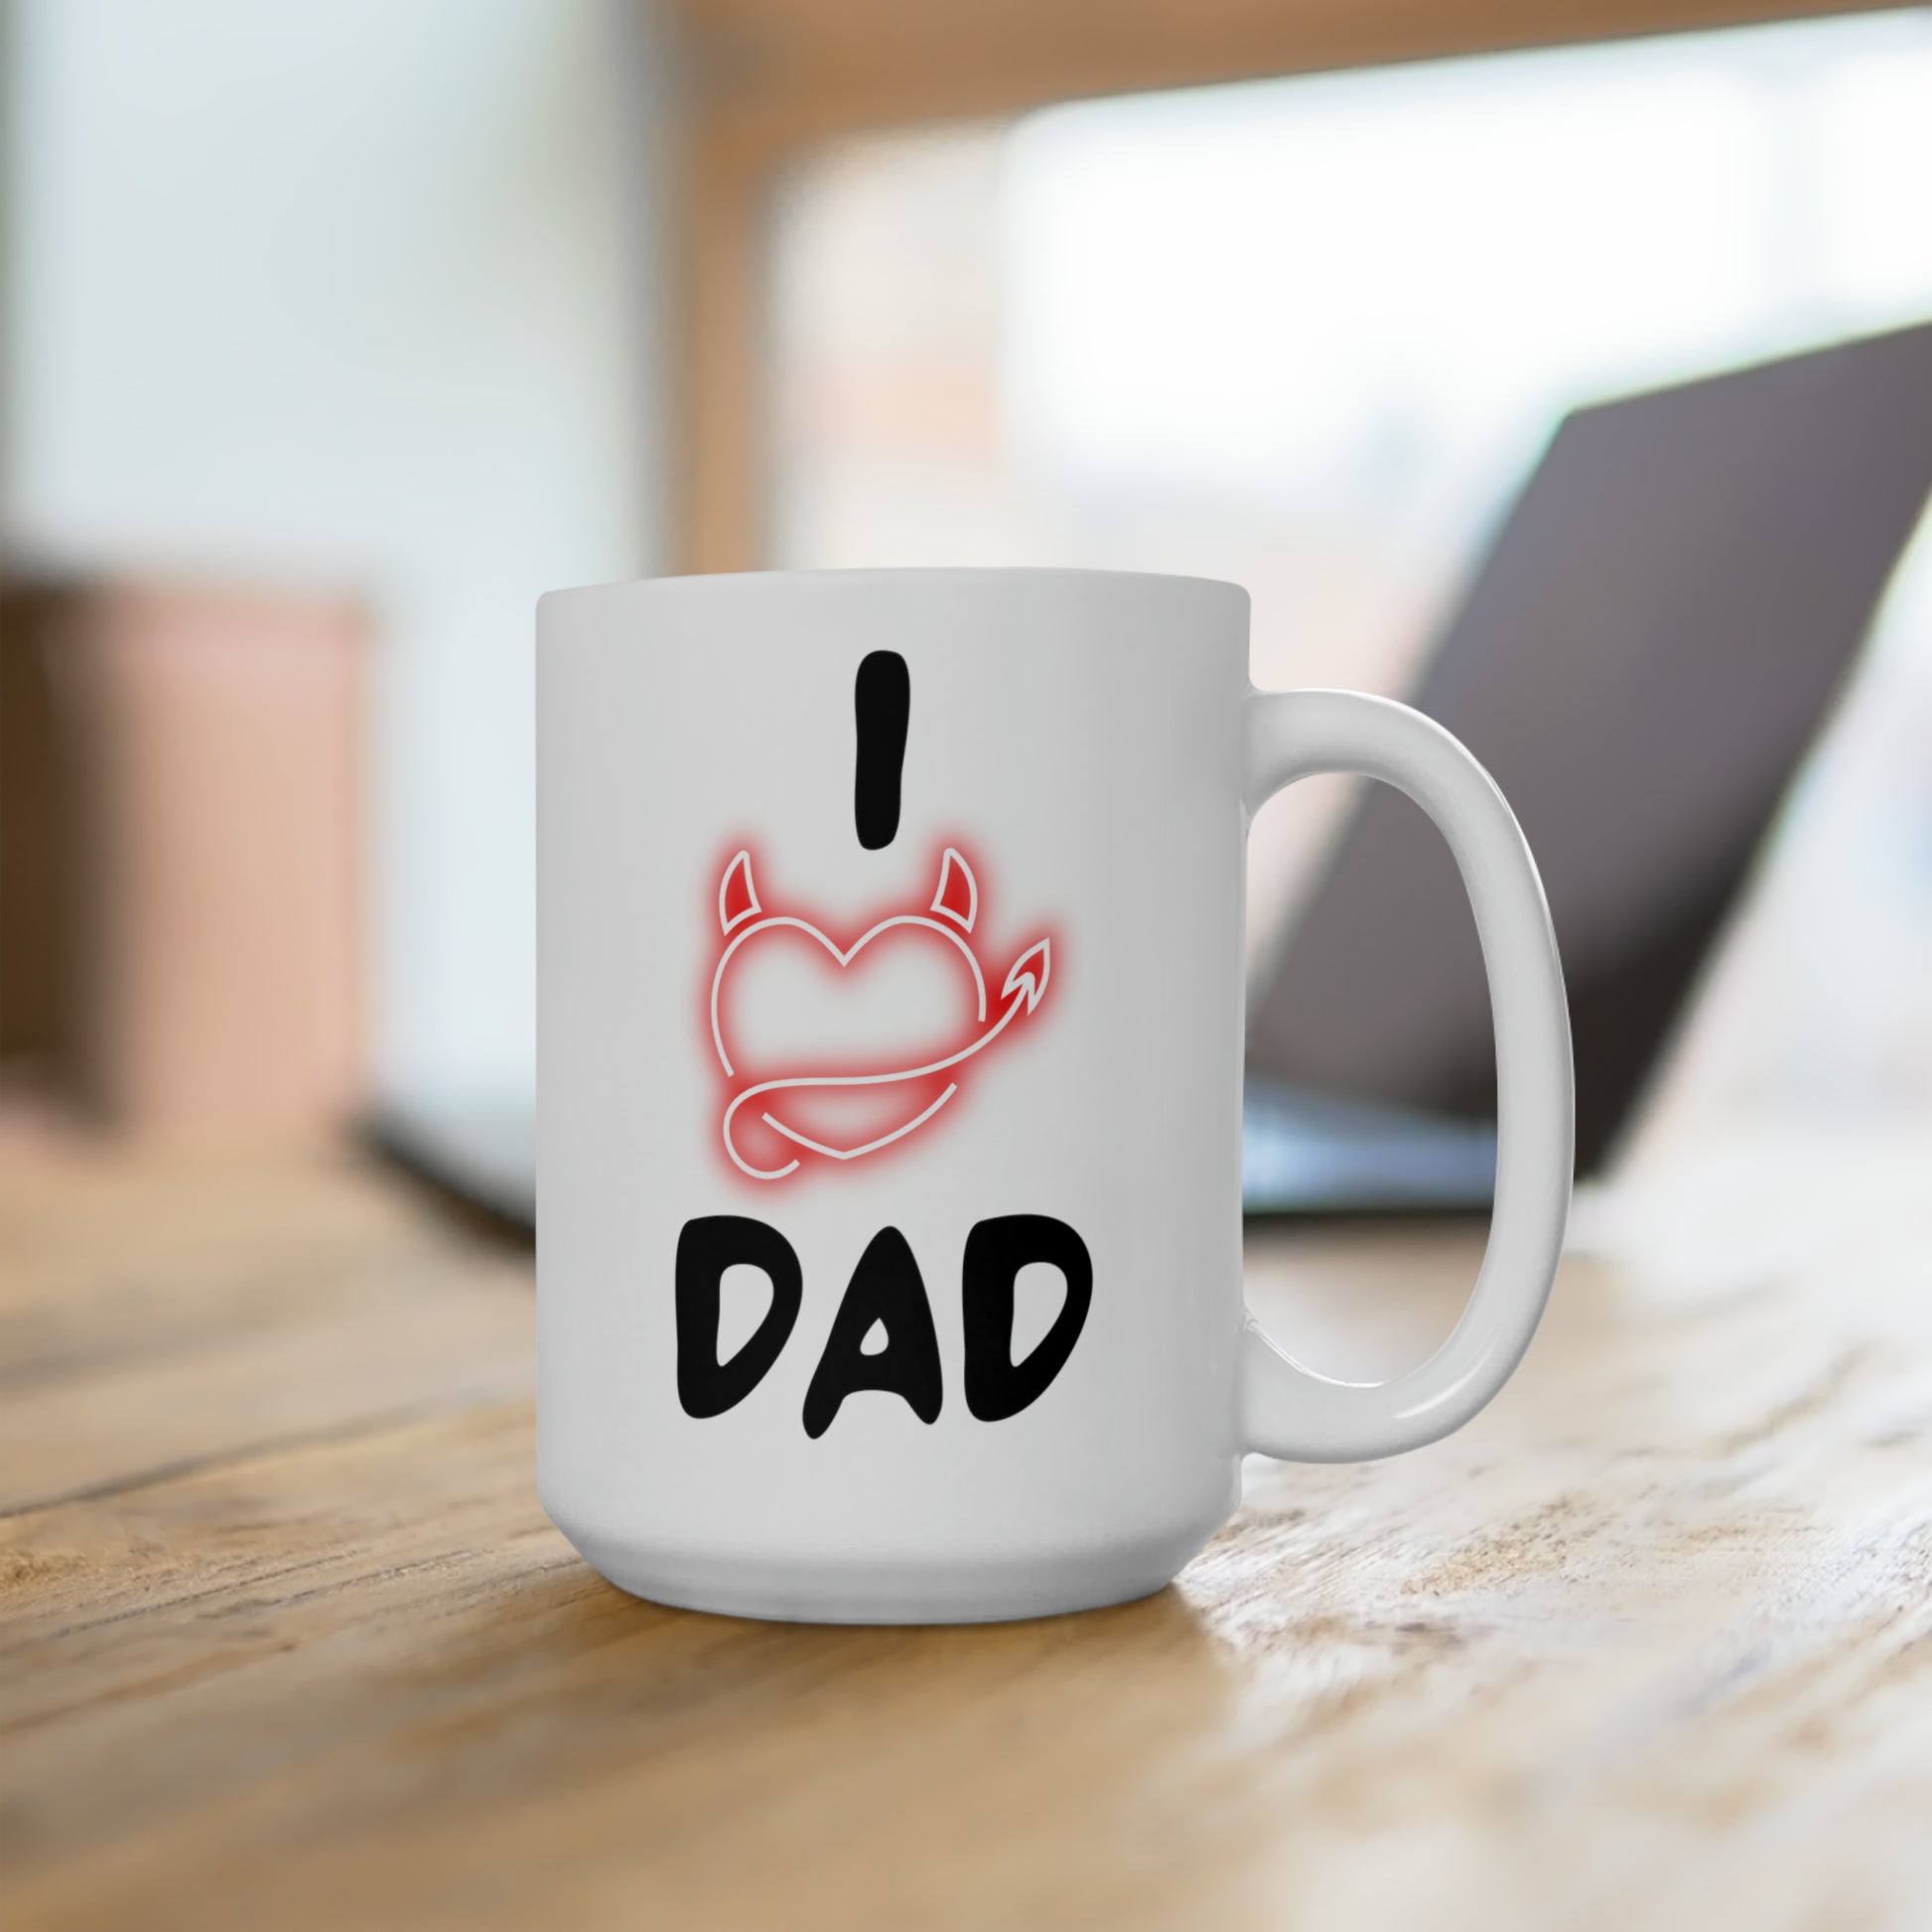 I Love You Dad Ceramic Mug 15oz